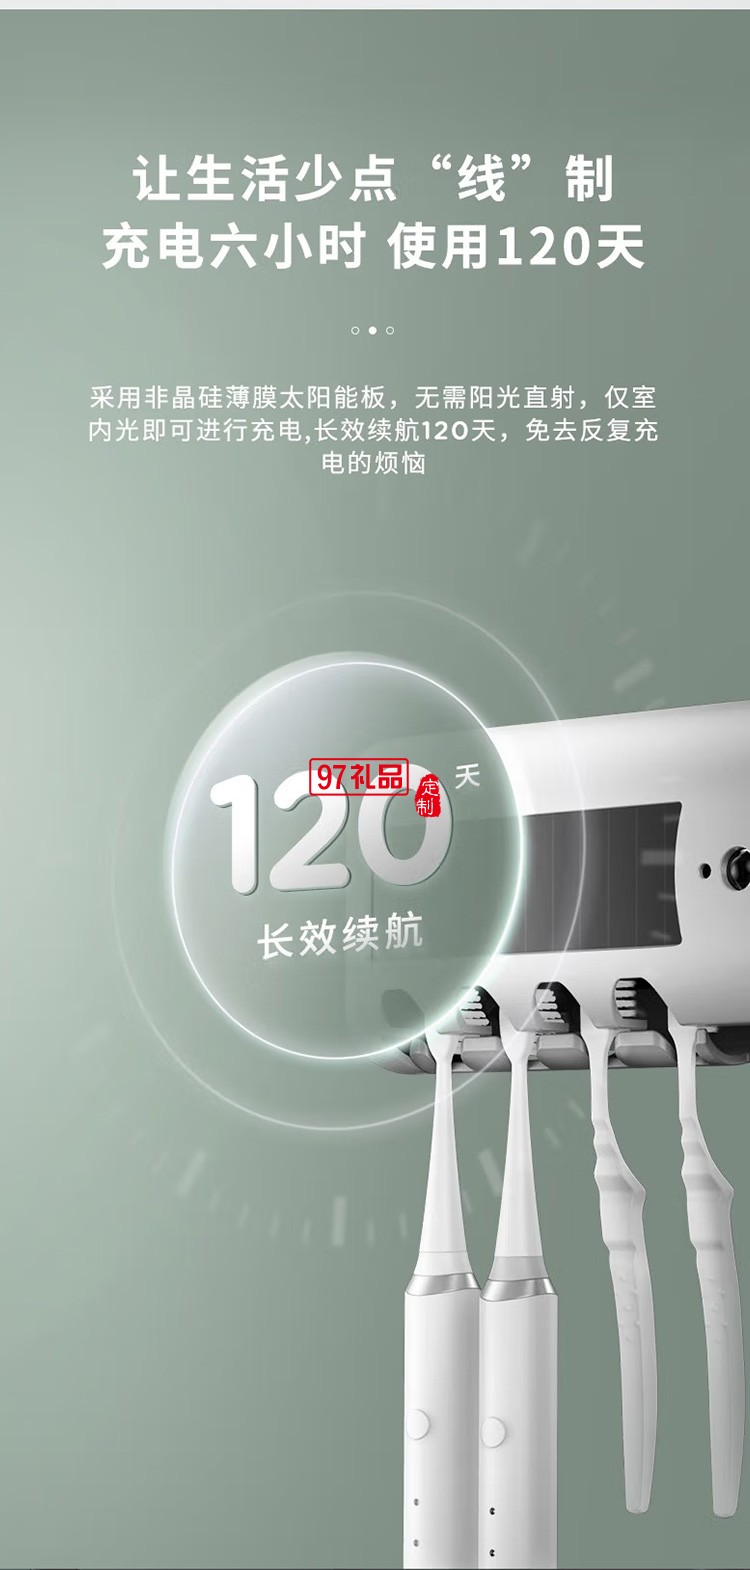 艾美特智能牙刷消毒器置物架紫外线LST02-A01定制公司广告礼品